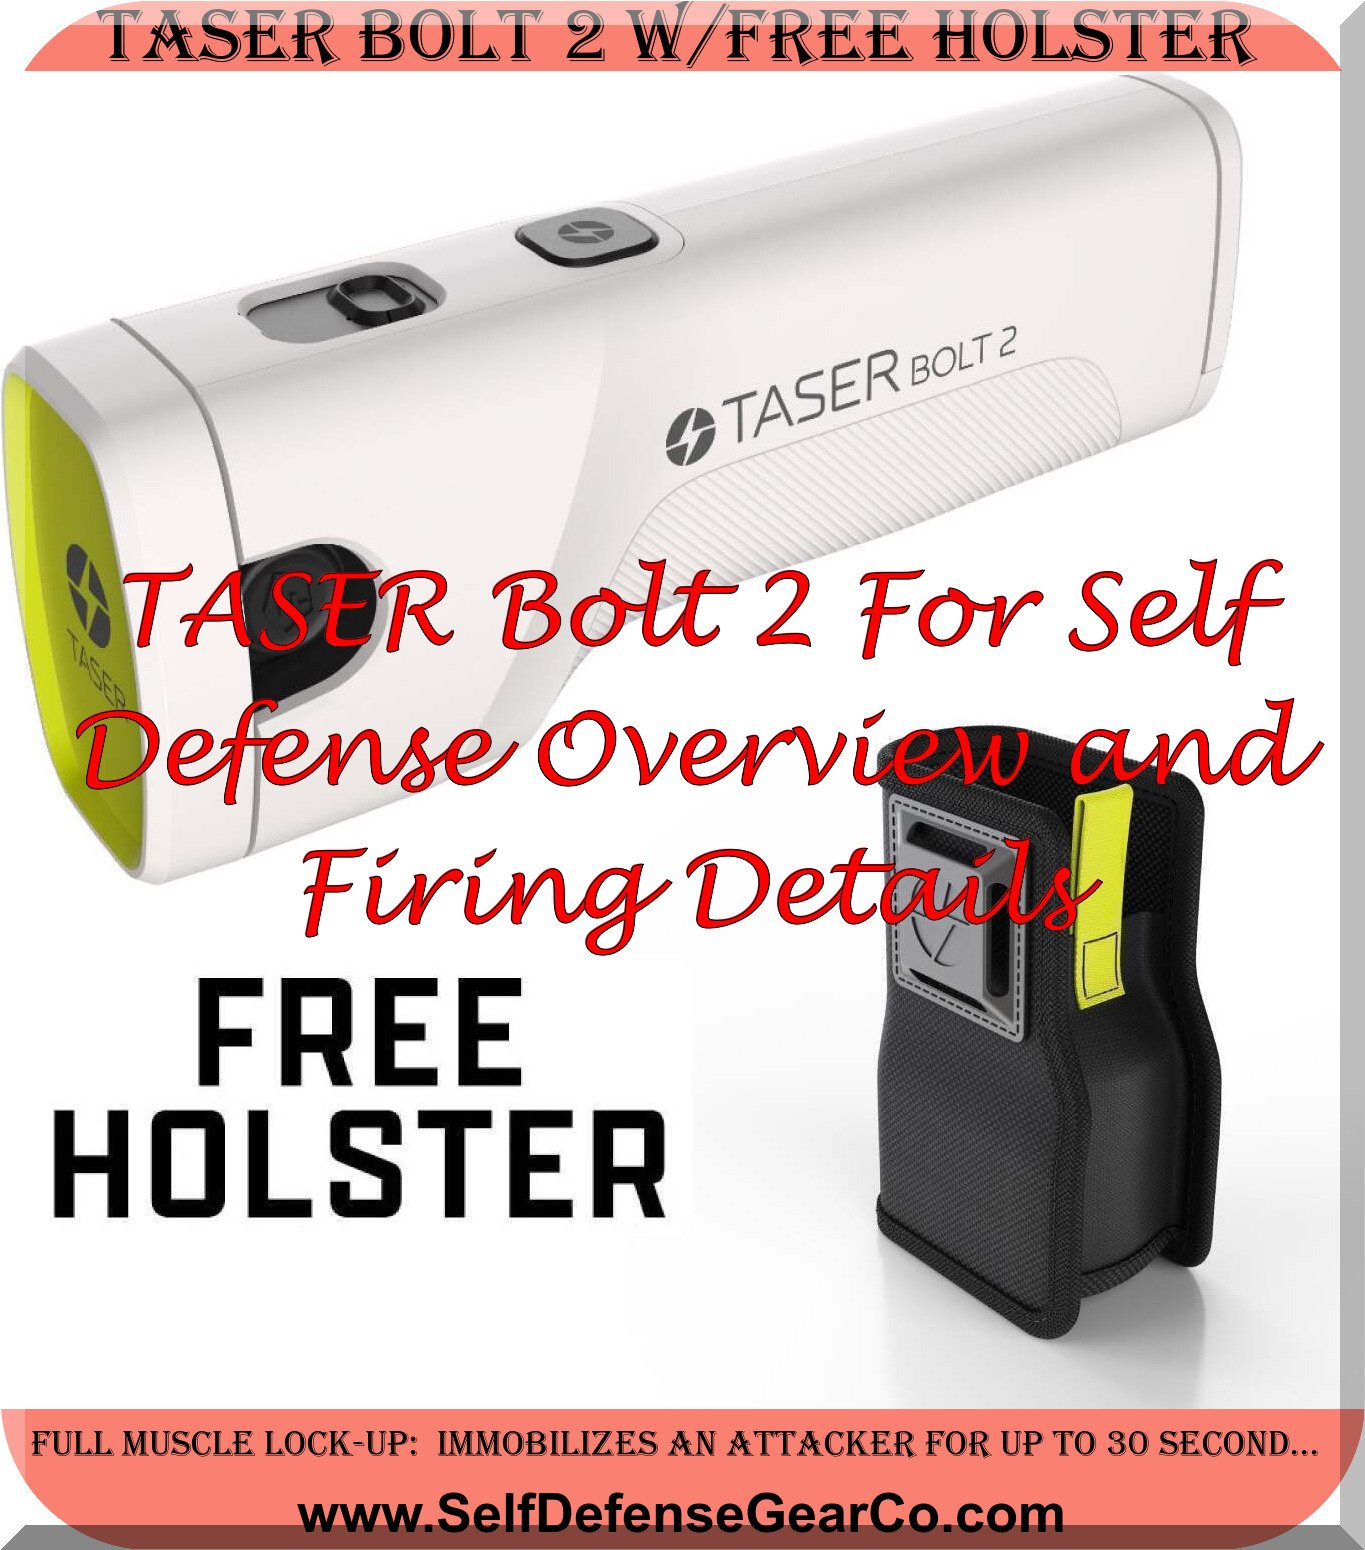 Taser Bolt 2 w/FREE Holster